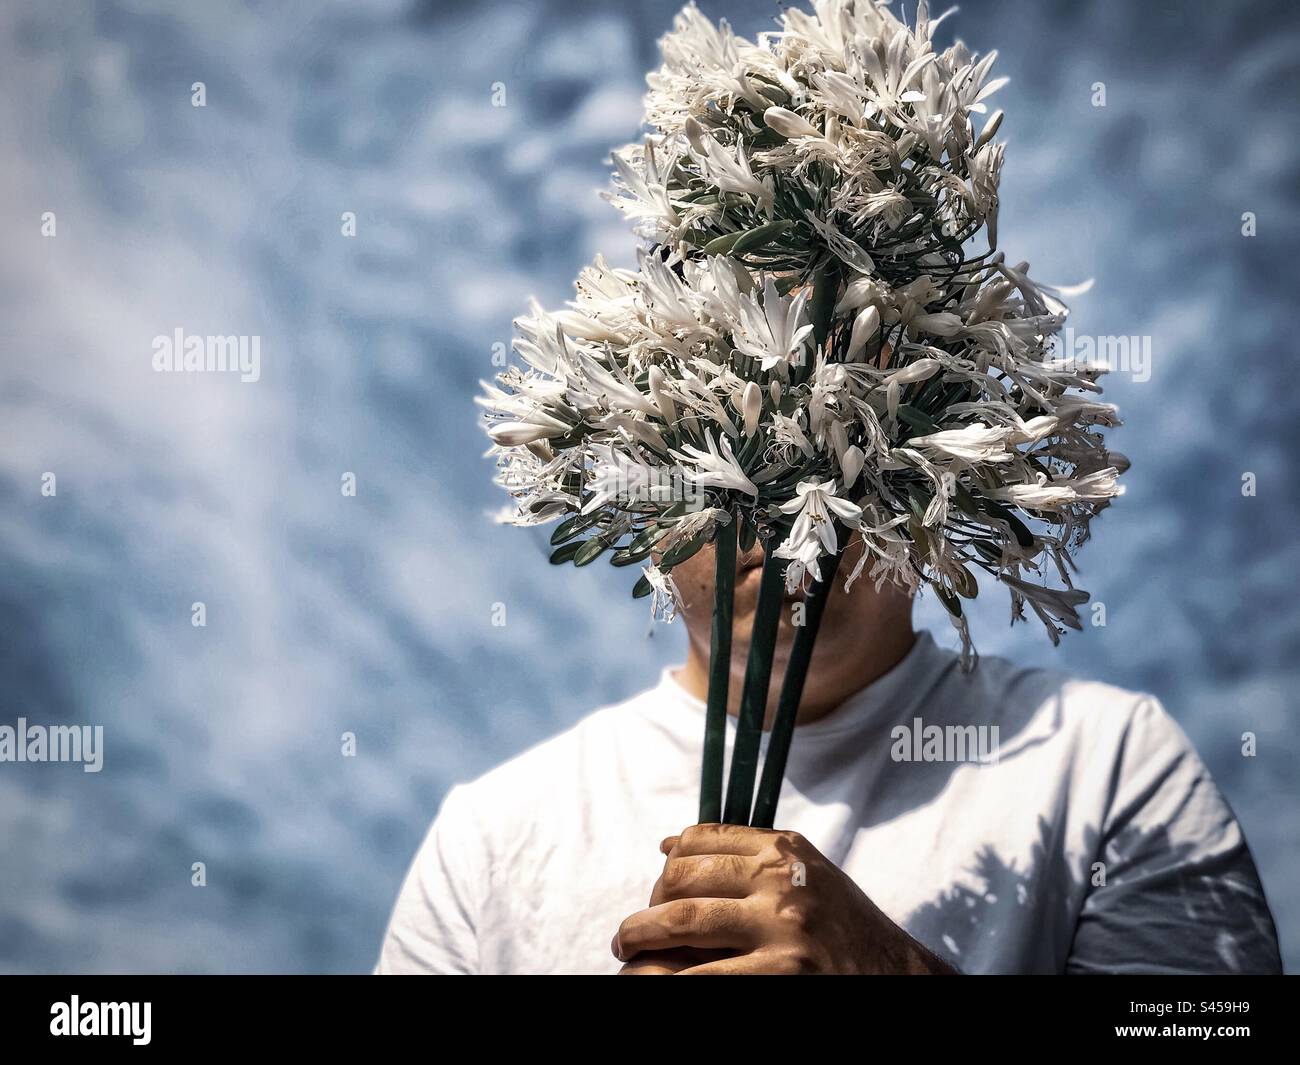 Portrait d'un jeune homme en T-shirt blanc tenant un bouquet de fleurs blanches d'Agapanthus africanus aka lys africain, lys du Nil contre ciel bleu nuageux. Visage obscurci. Mode. Thème du printemps. Banque D'Images